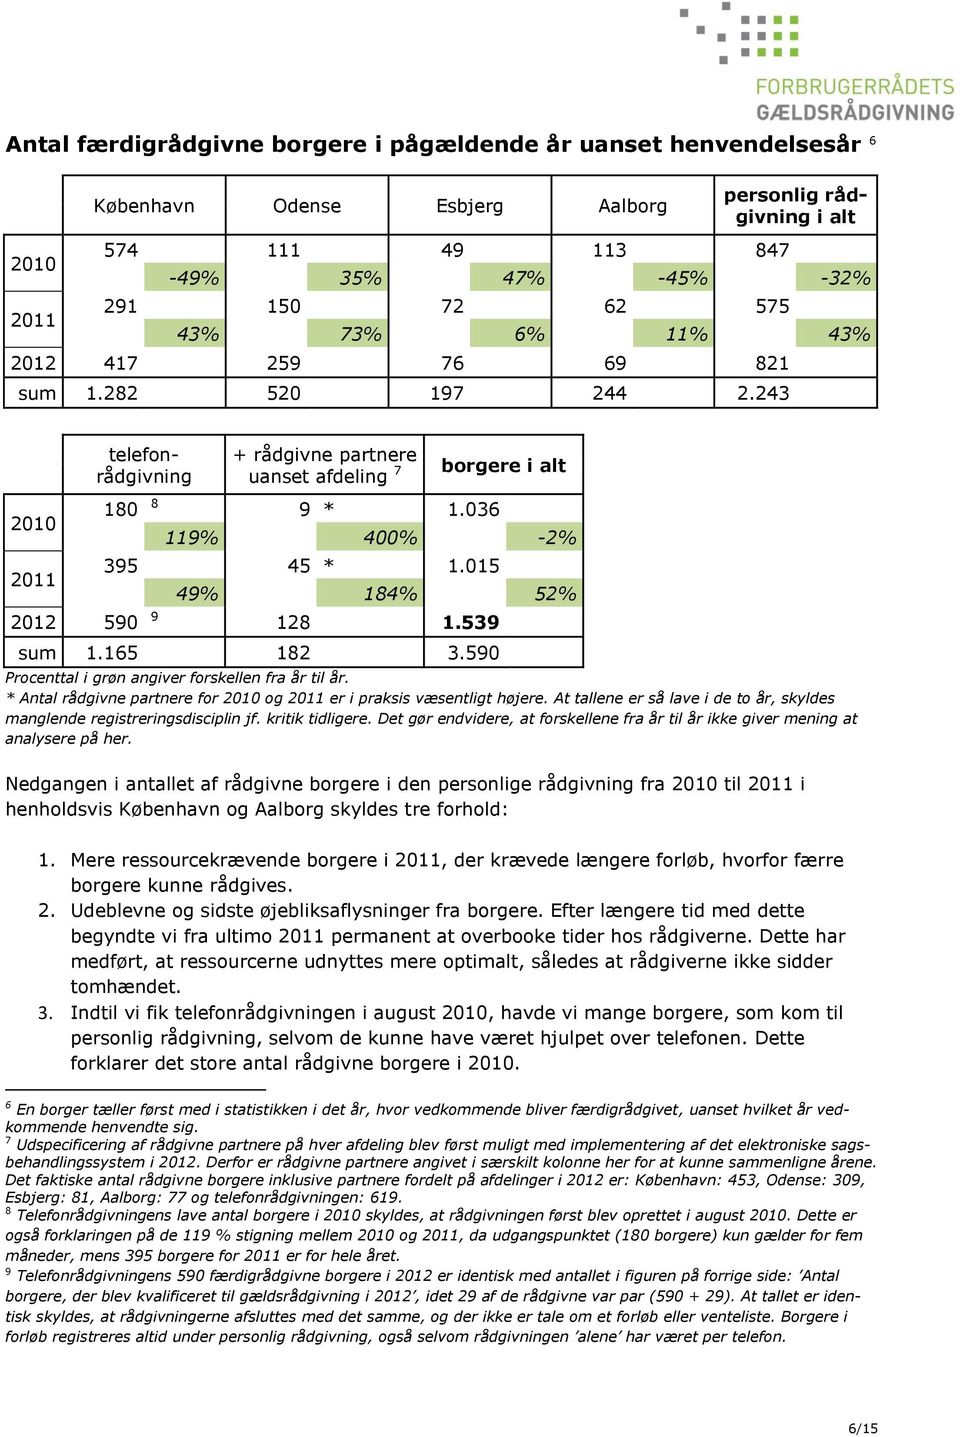 015 49% 184% 52% 2012 590 9 128 1.539 sum 1.165 182 3.590 Procenttal i grøn angiver forskellen fra år til år. * Antal rådgivne partnere for 2010 og 2011 er i praksis væsentligt højere.